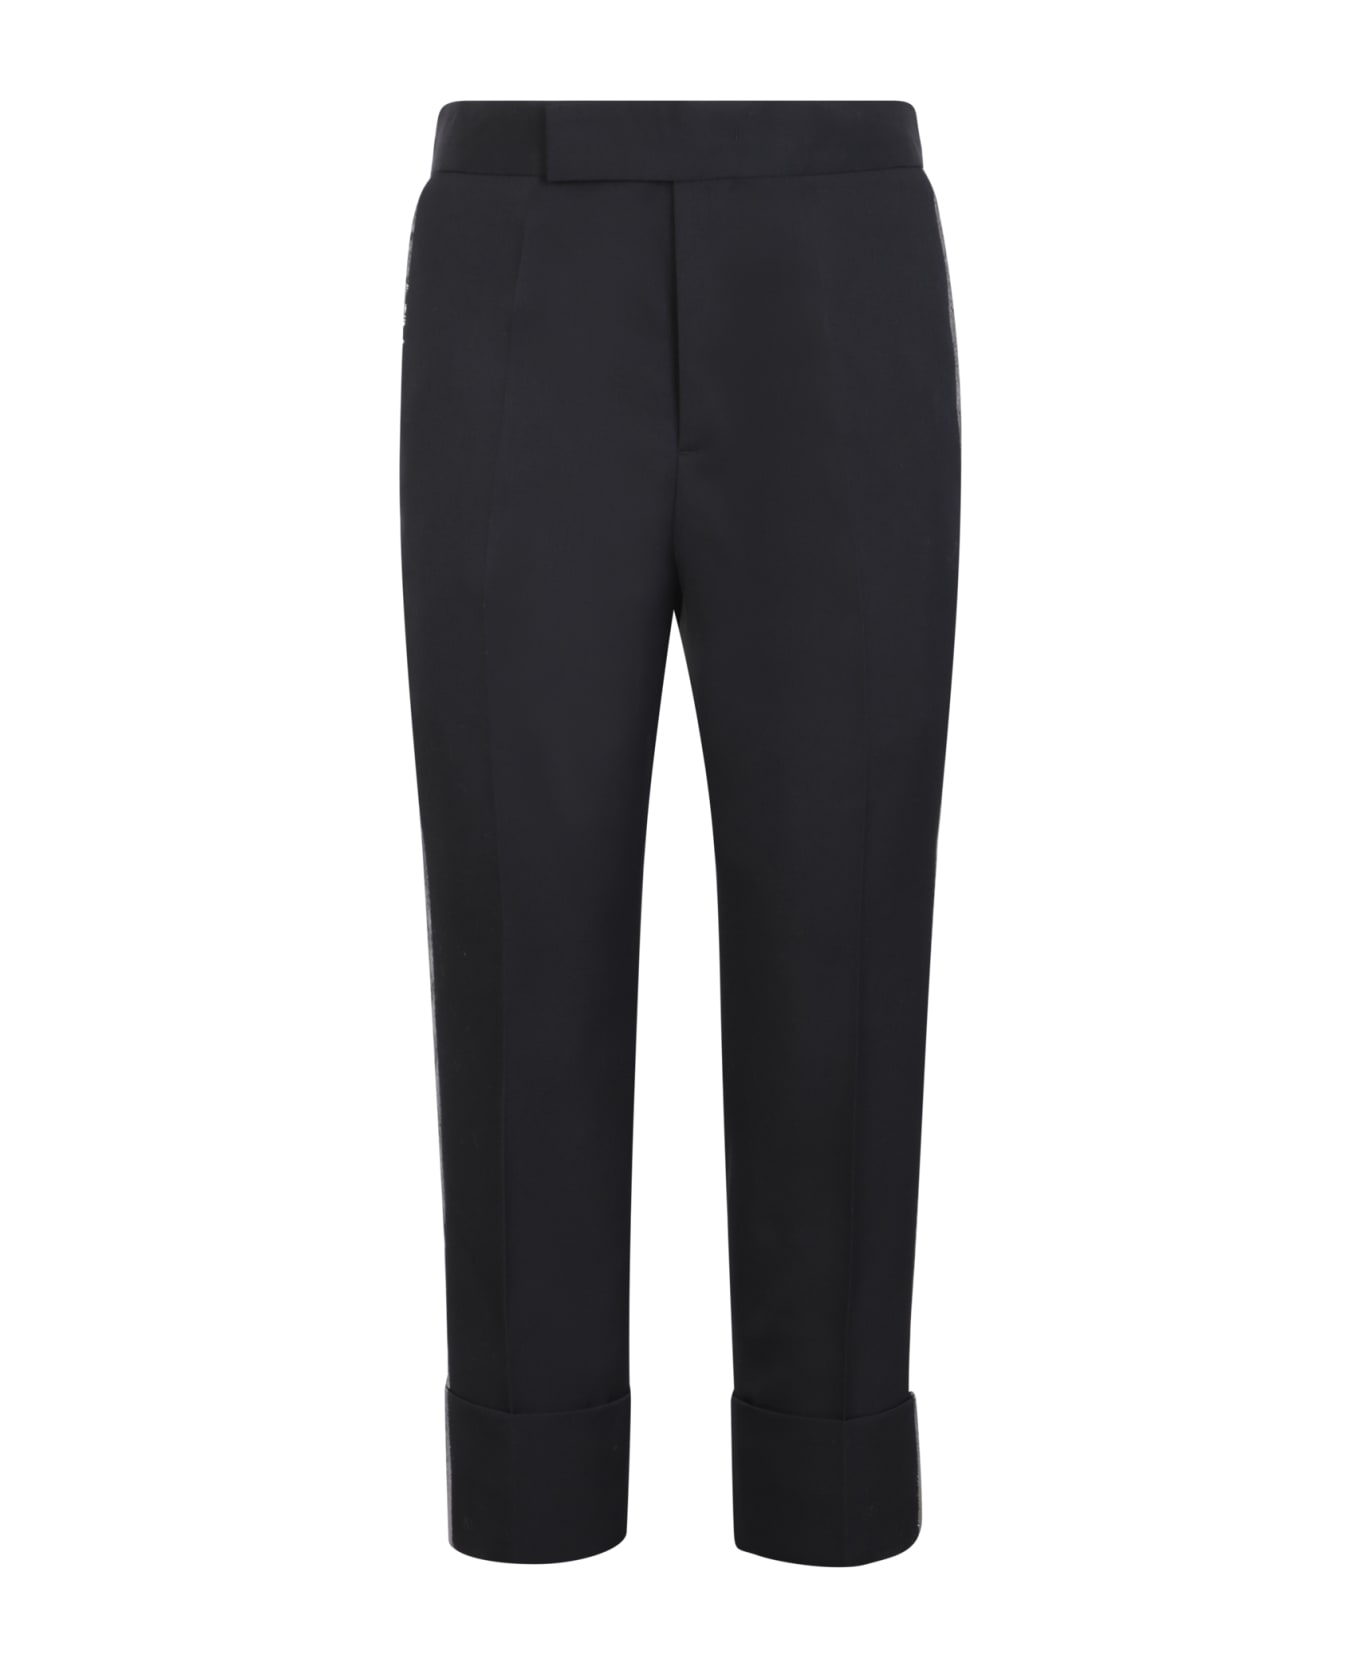 Sapio Tailored Black Trousers - Black